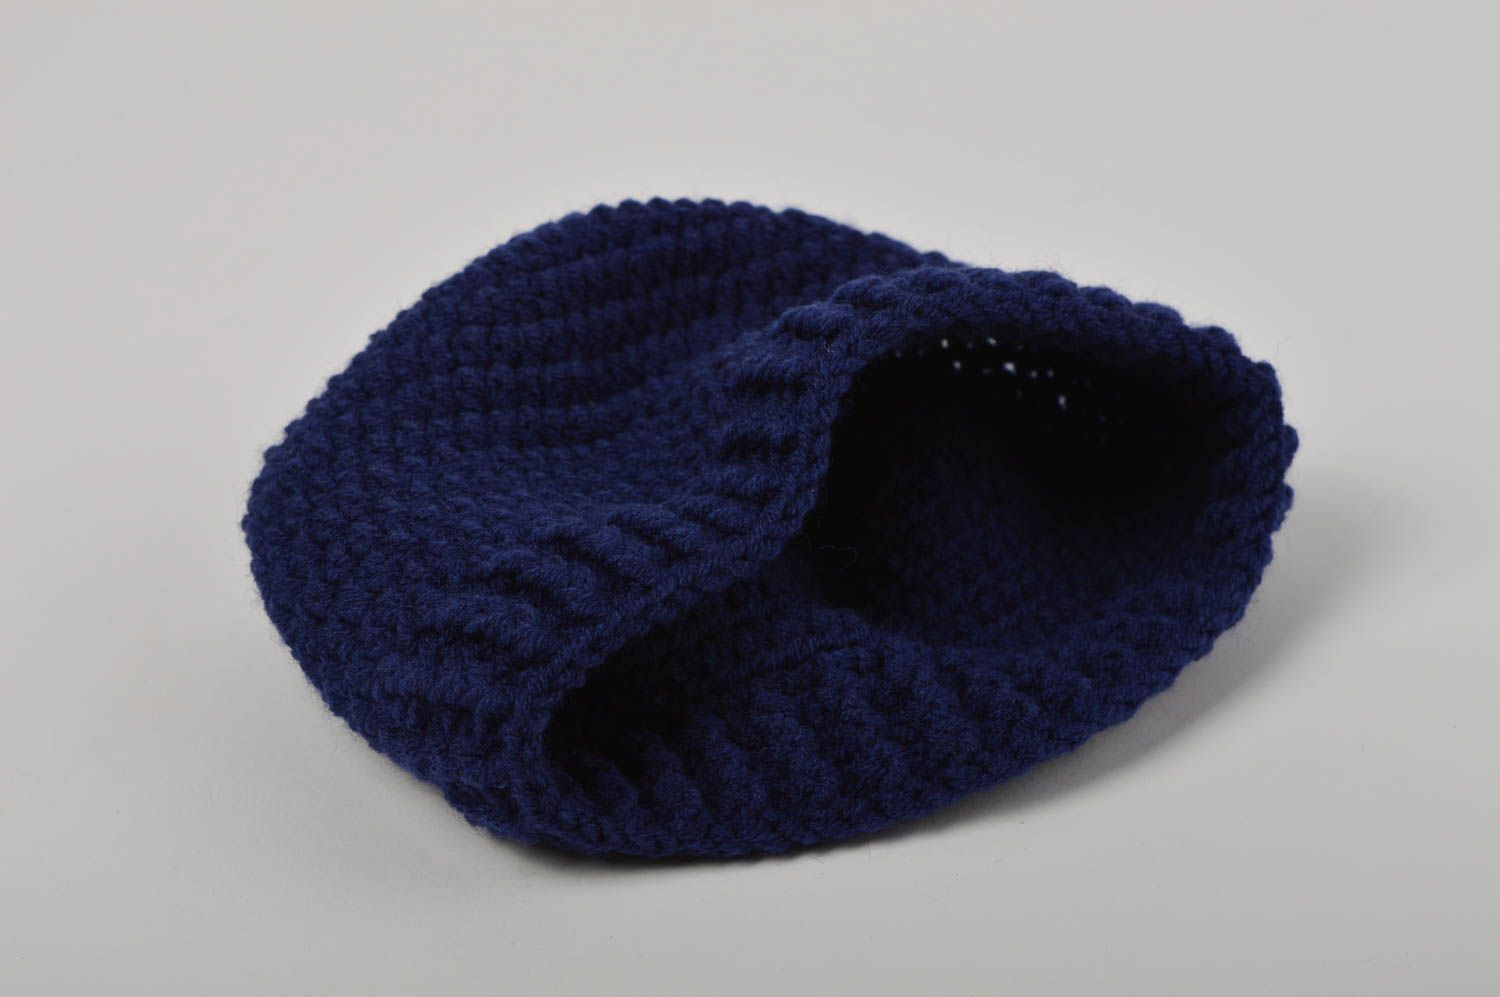 Шапка ручной работы зимняя шапка головной убор для мальчика темно синего цвета фото 3